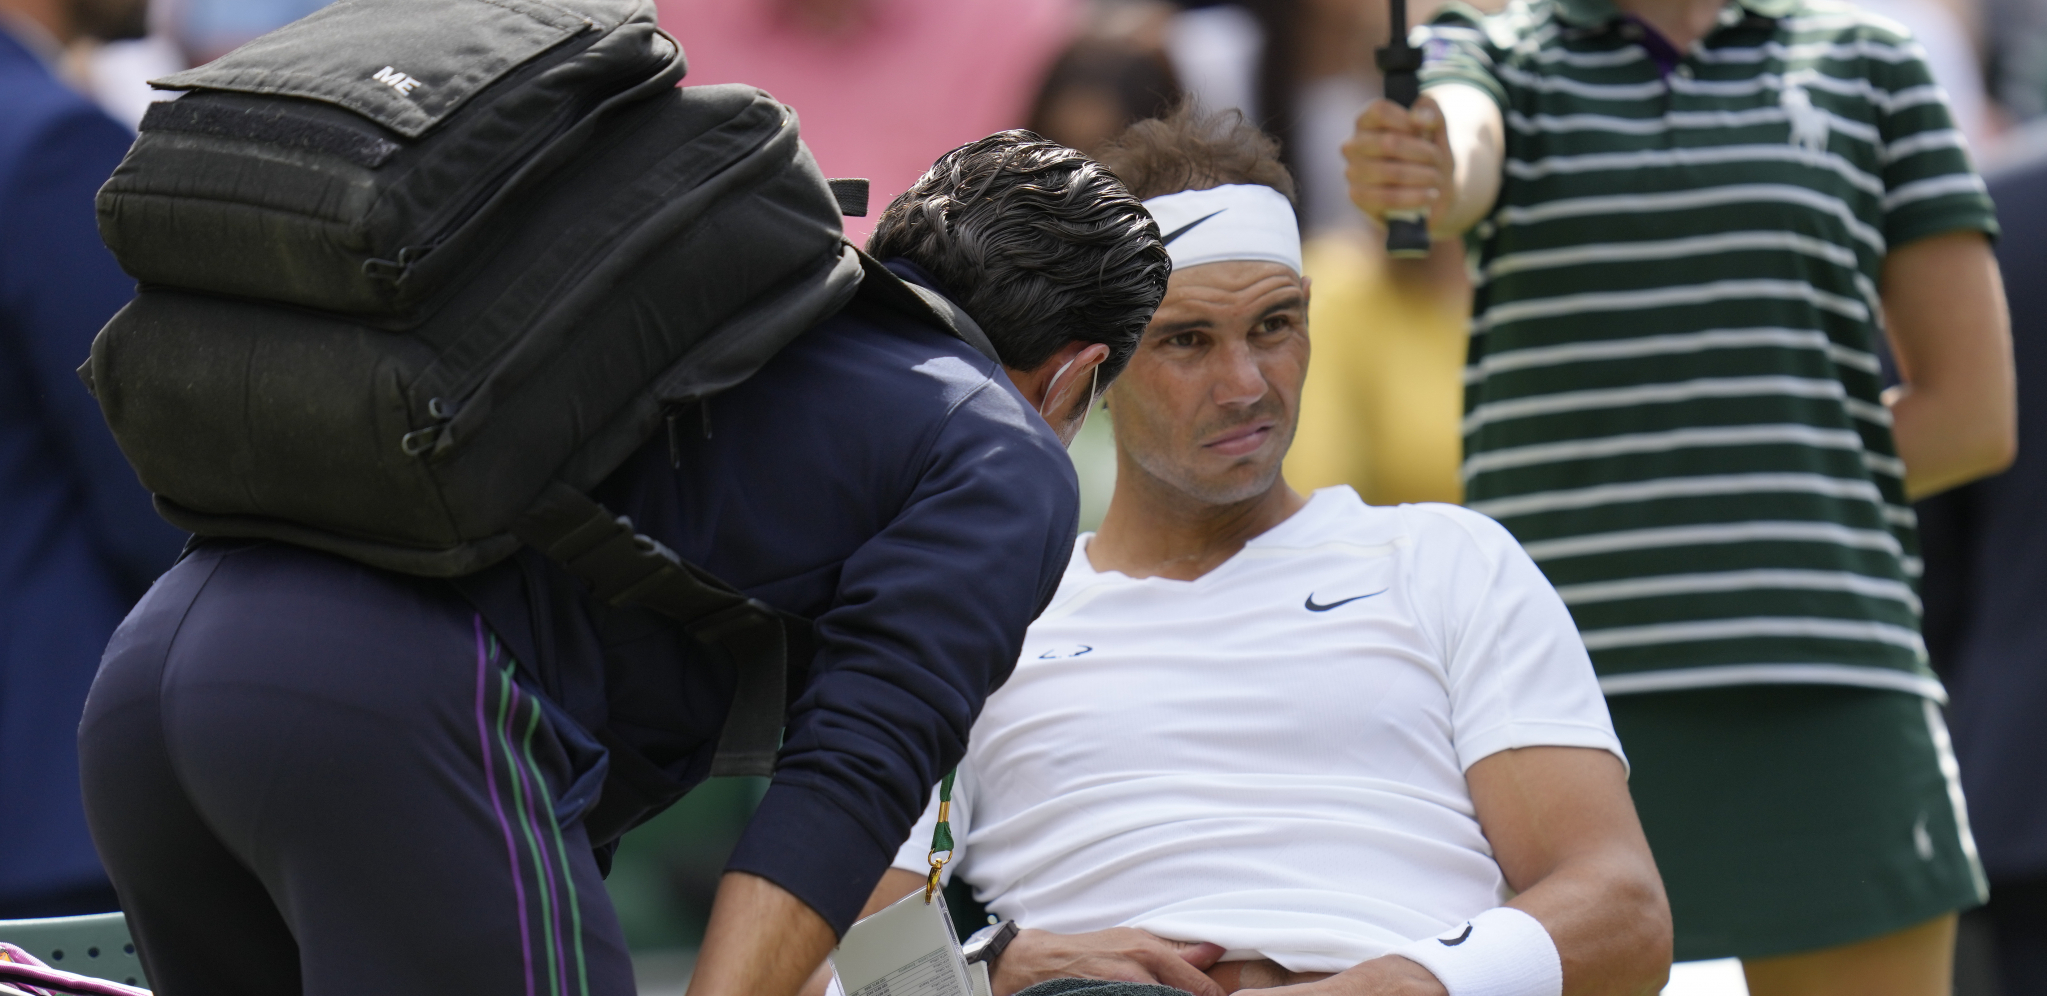 SMUČILO MU SE Poznati teniser isprozivao Nadala, optužio ga da je folirant